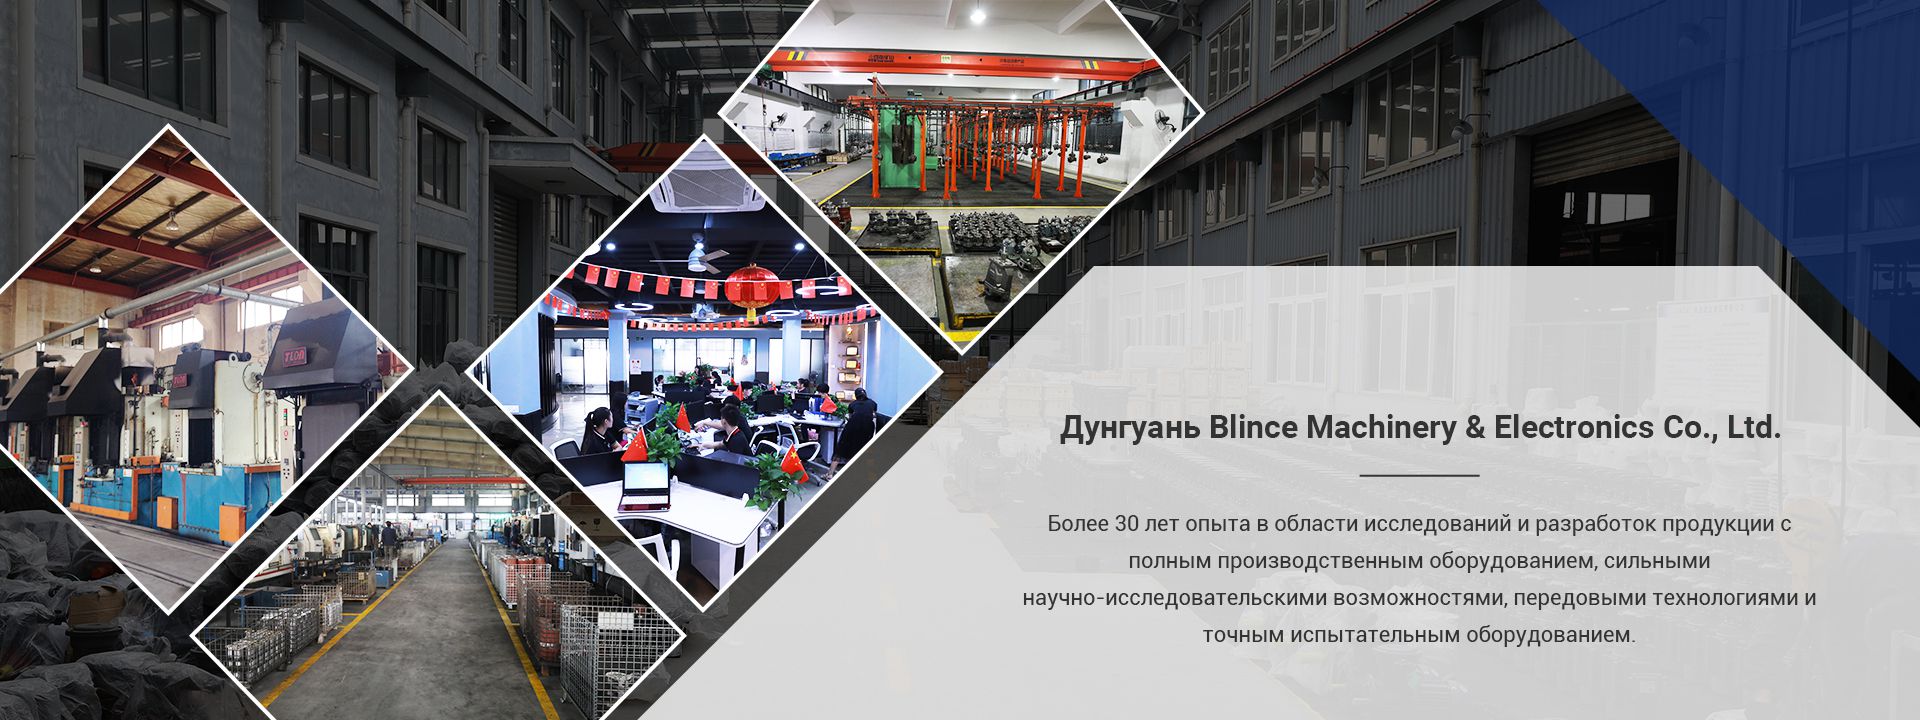 Компания Dongguan Blince Machinery & Electronics Co., Ltd.